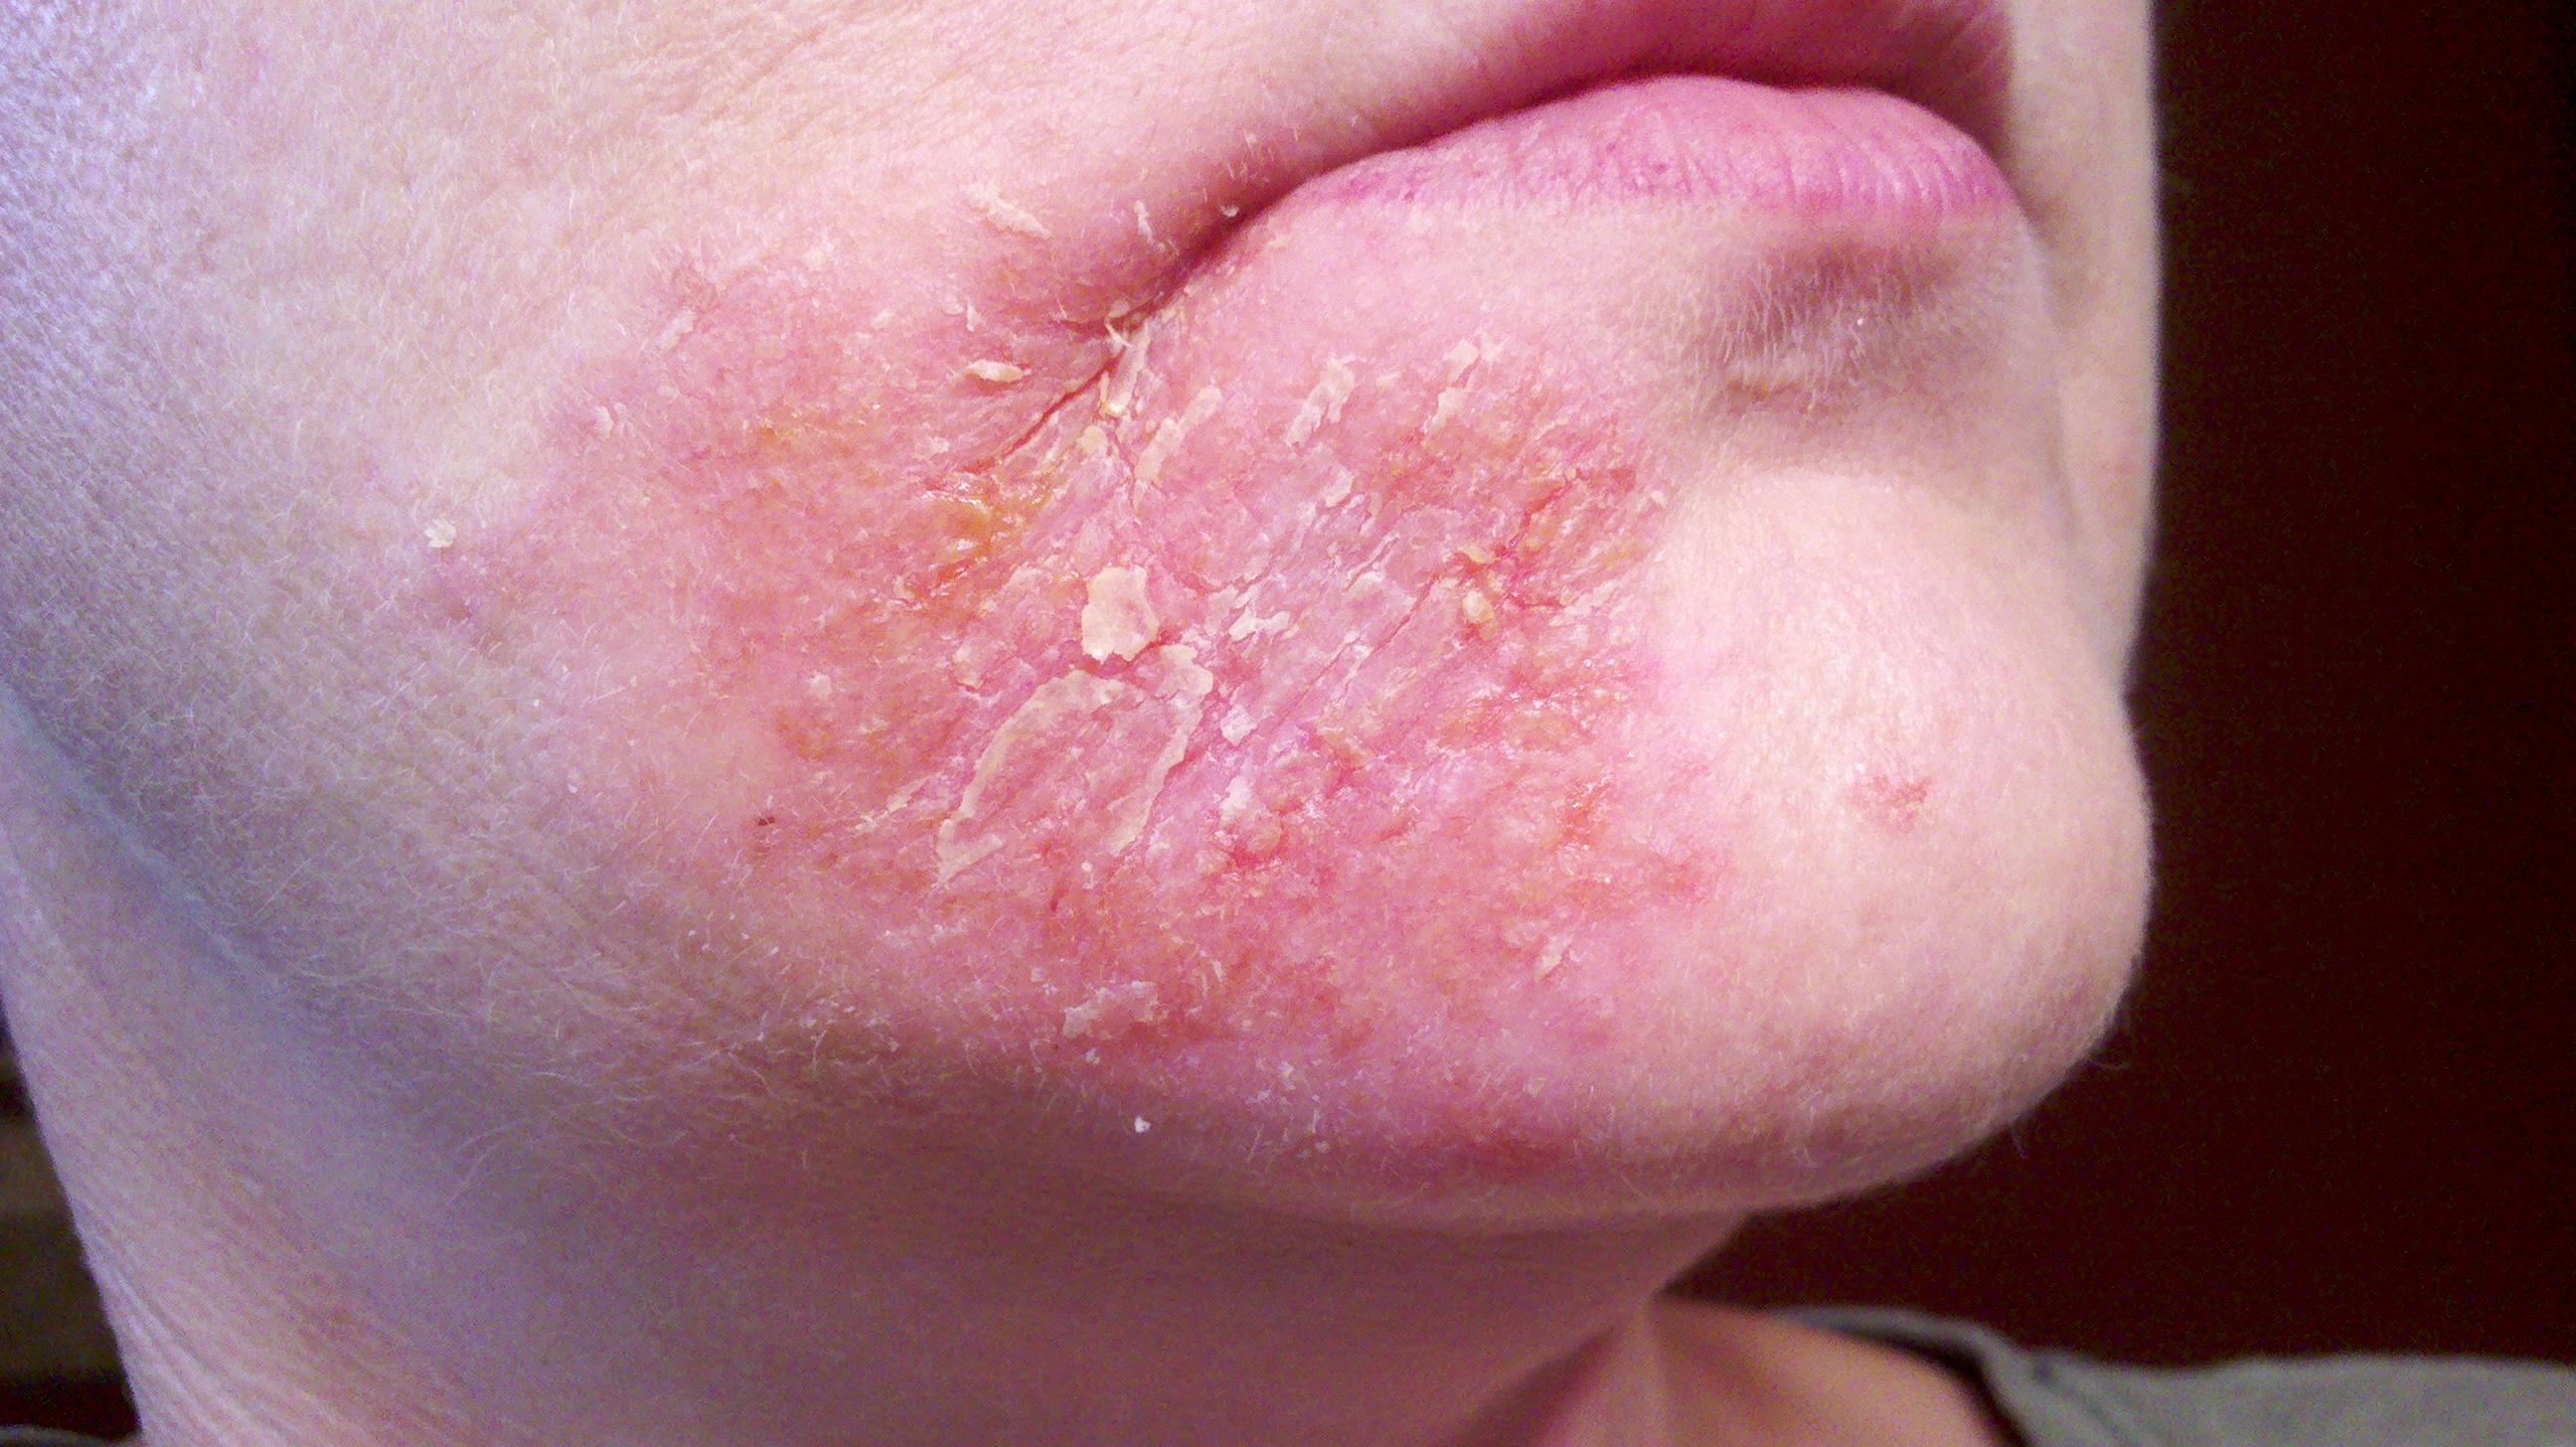 dermatitis around mouth